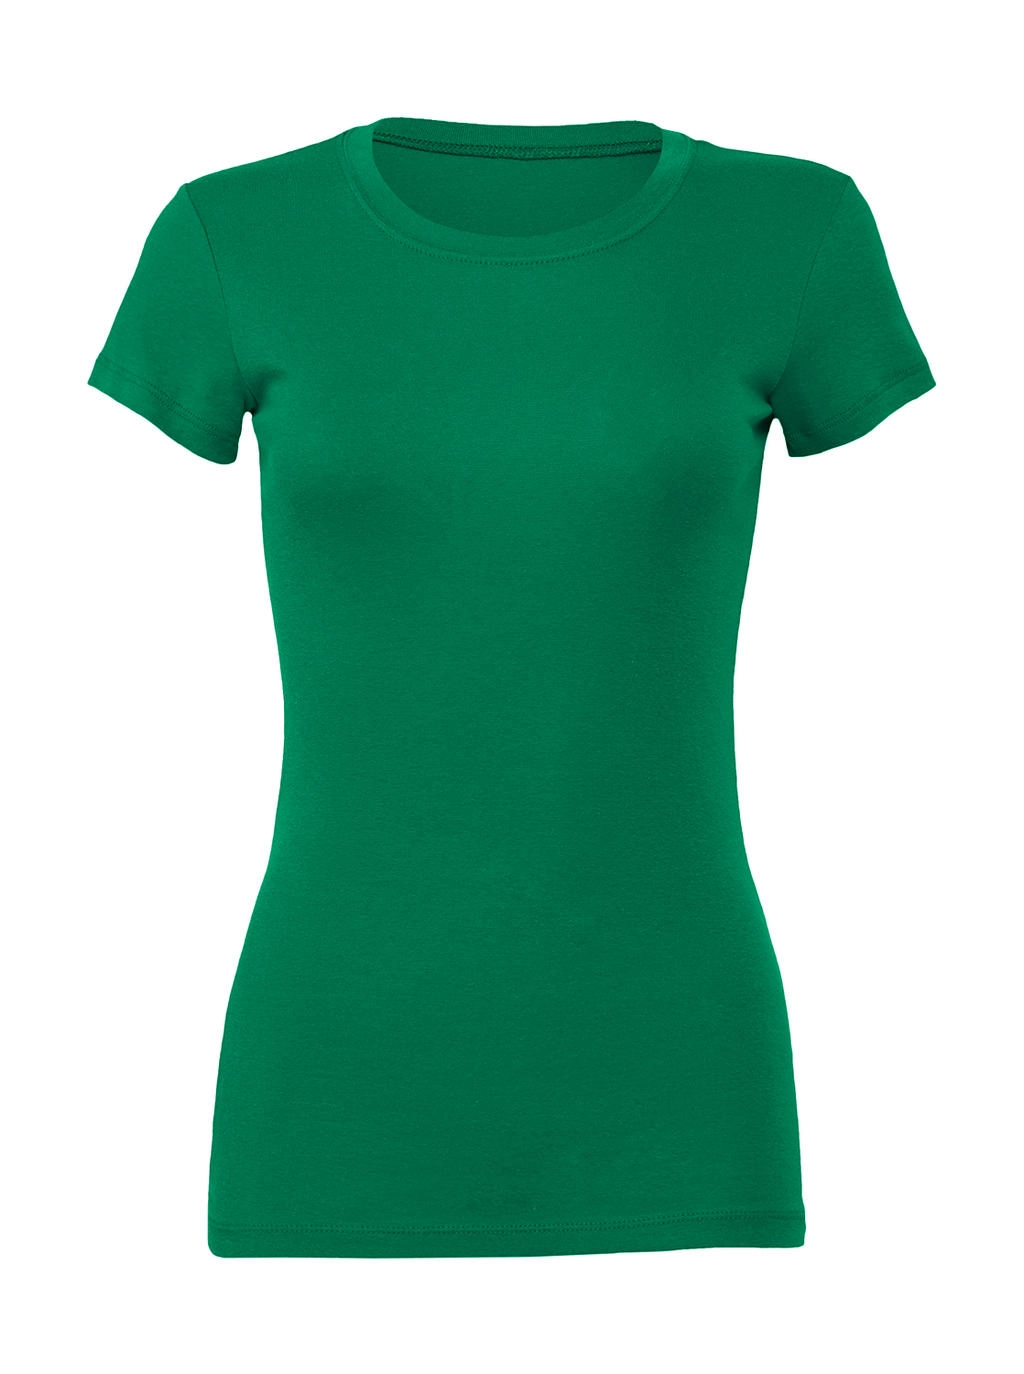 The Favorite T-Shirt zum Besticken und Bedrucken in der Farbe Kelly Green mit Ihren Logo, Schriftzug oder Motiv.